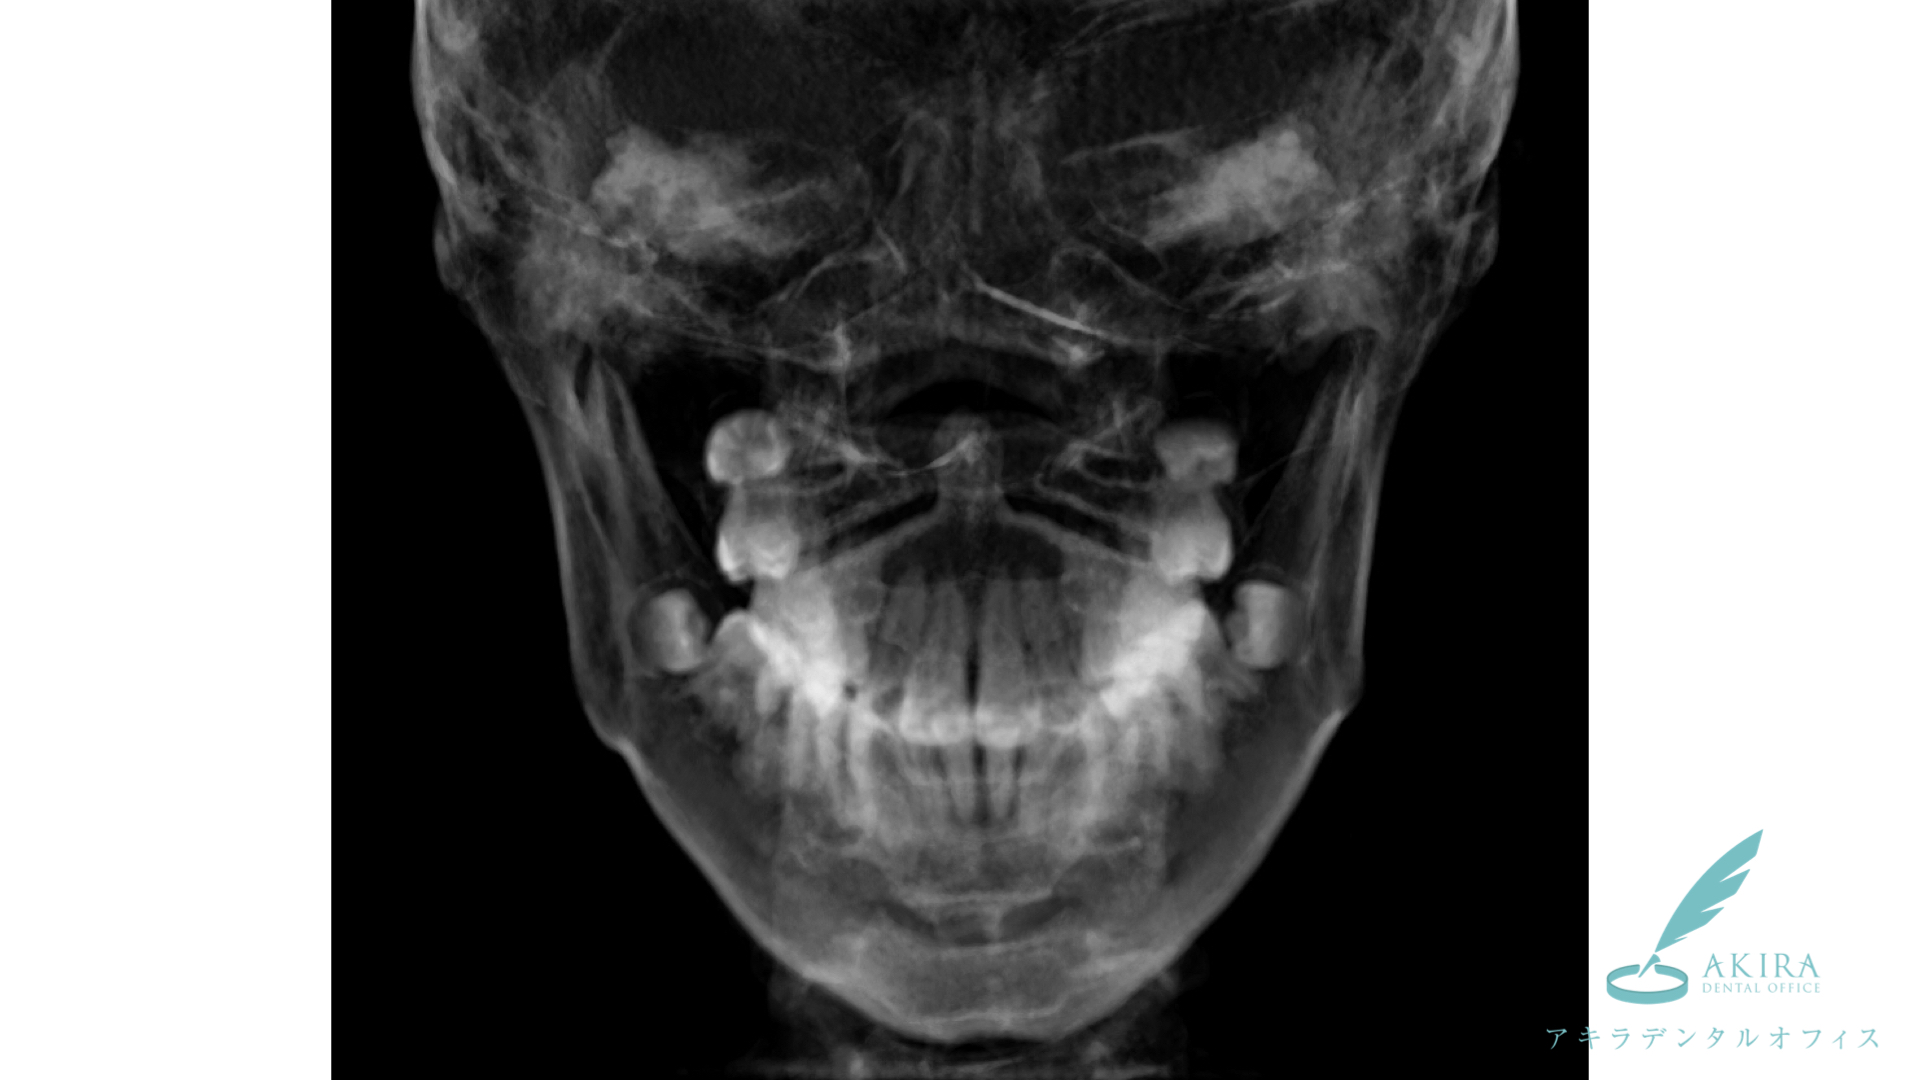 歯並びについて幼稚園から小学校の時にはパノラマエックス線撮影やセファロ CT撮影で確認した方が良いでしょう